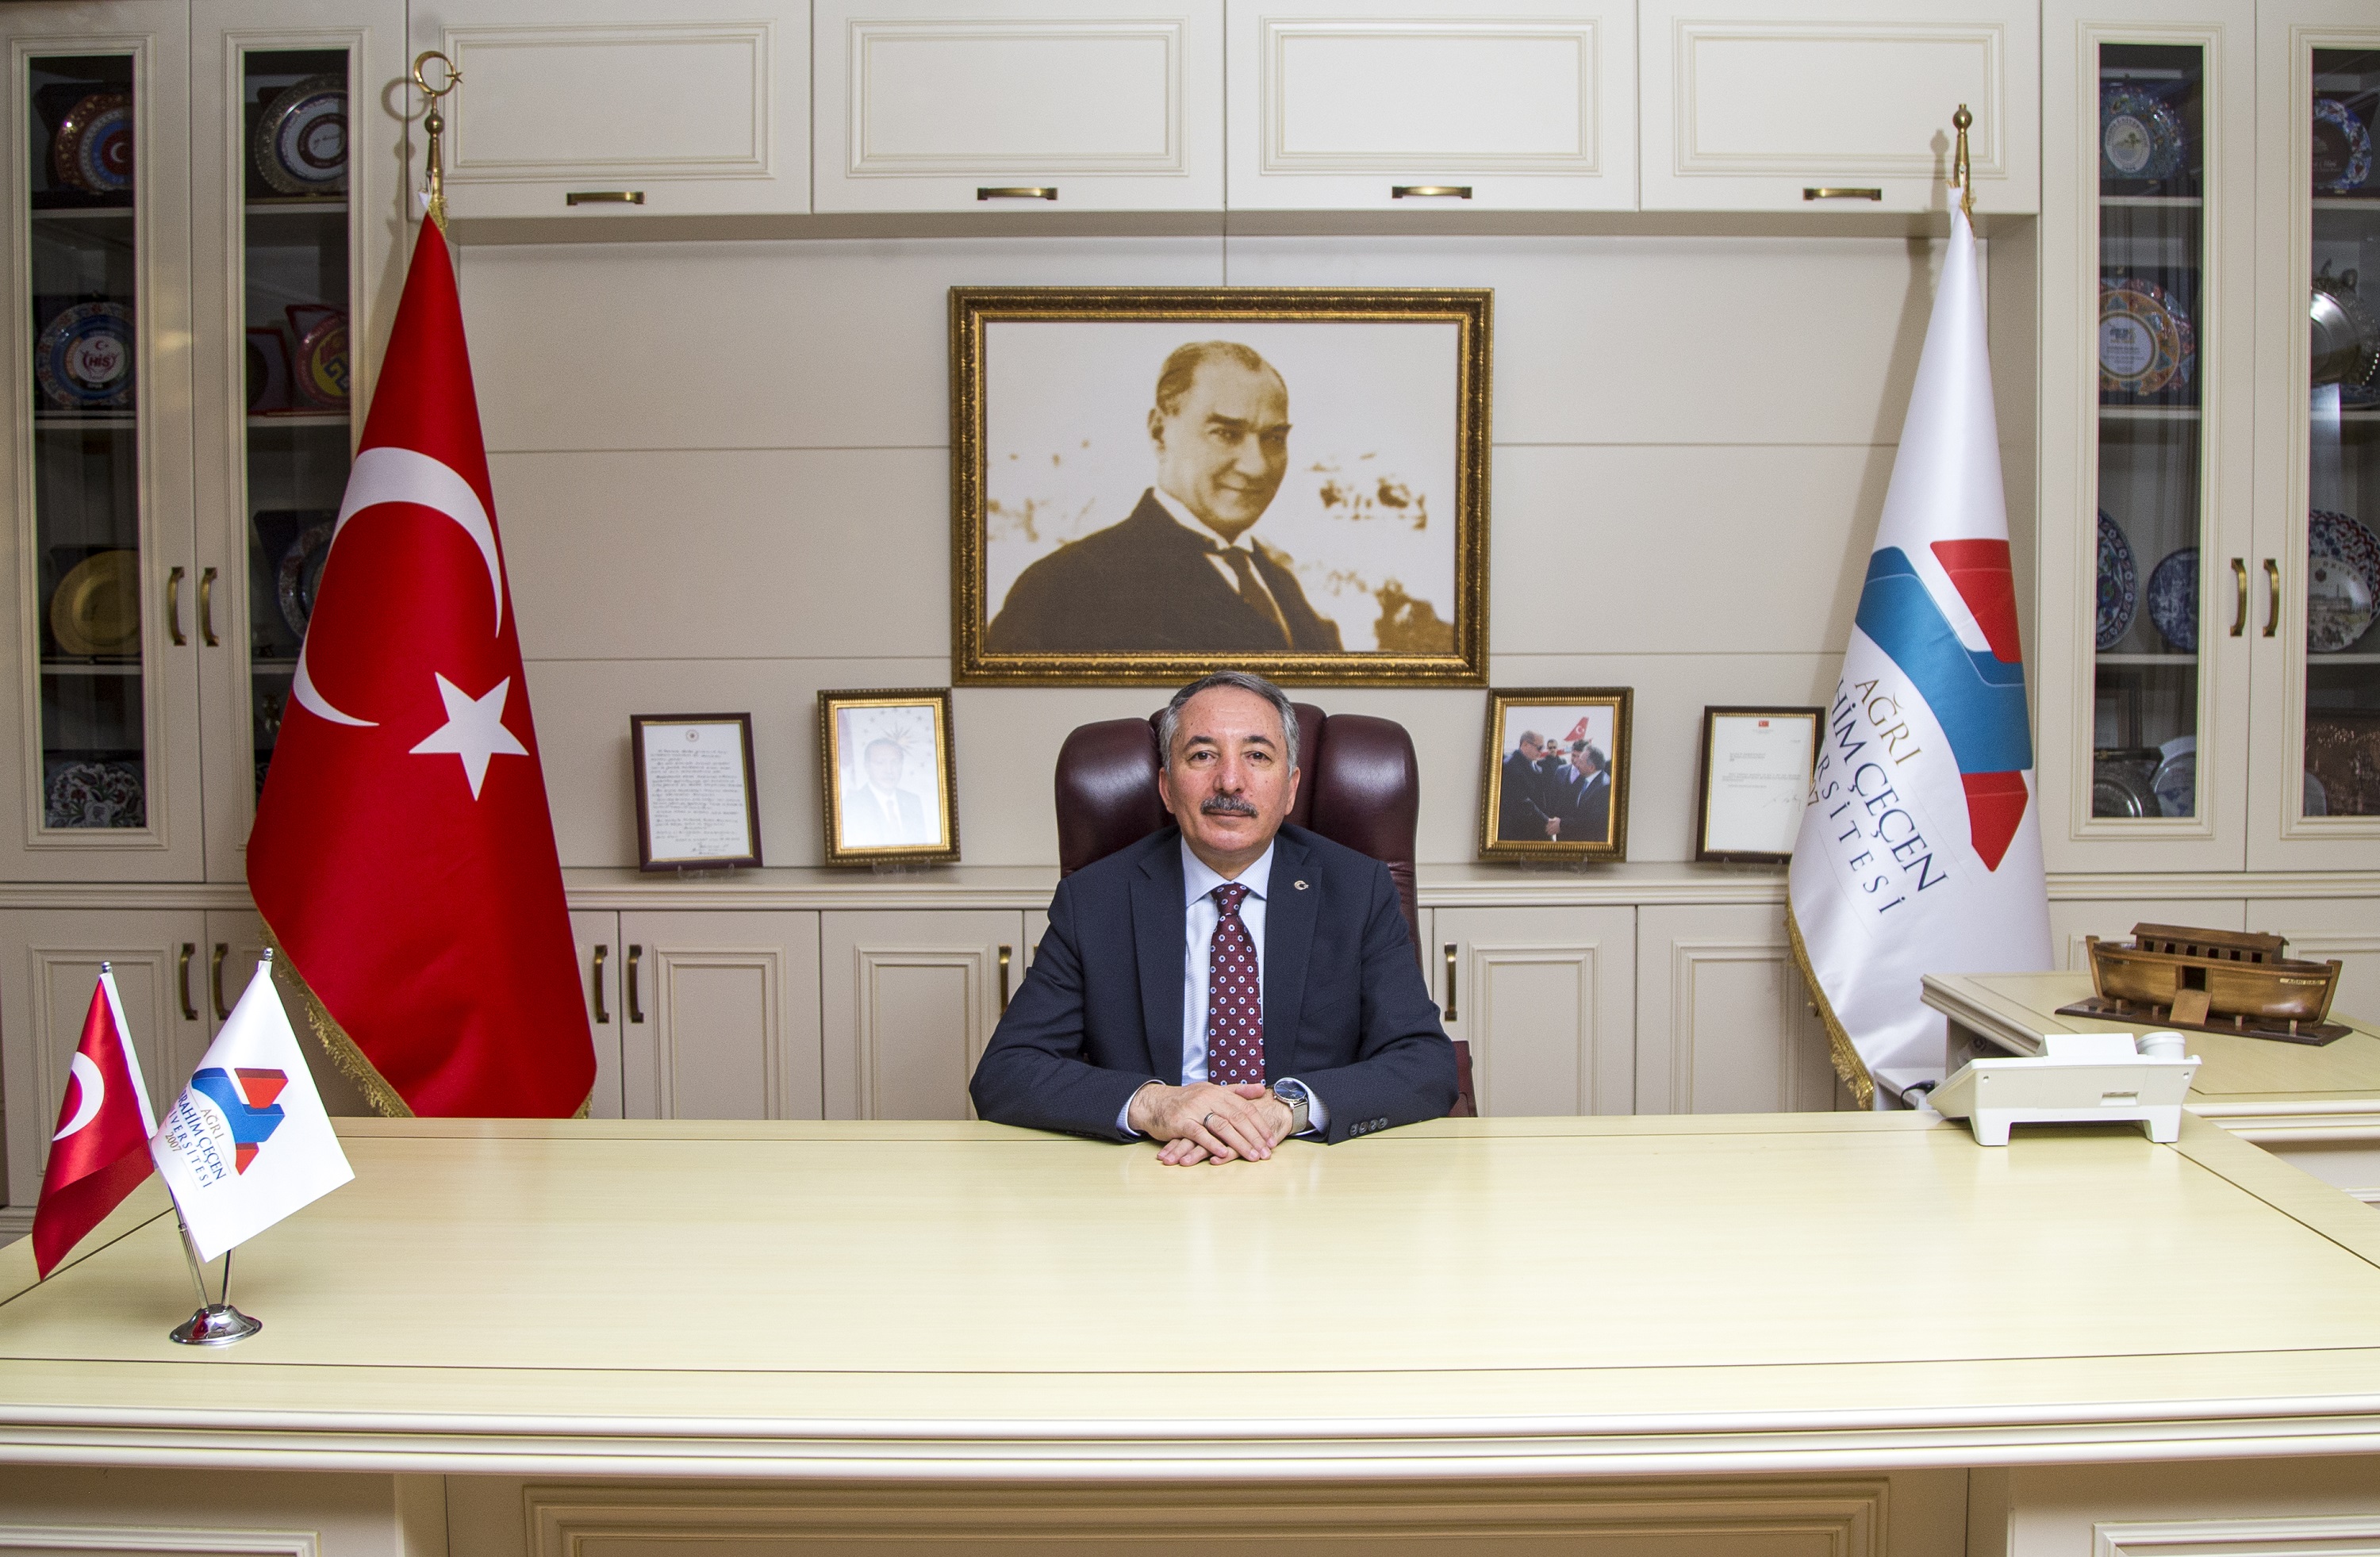 AİÇÜ Rektörü Prof. Dr. Abdulhalik Karabulut’un 19 Mayıs Atatürk’ü Anma Gençlik ve Spor Bayramı İçin Yayınlamış Oldukları Kutlama Mesajı